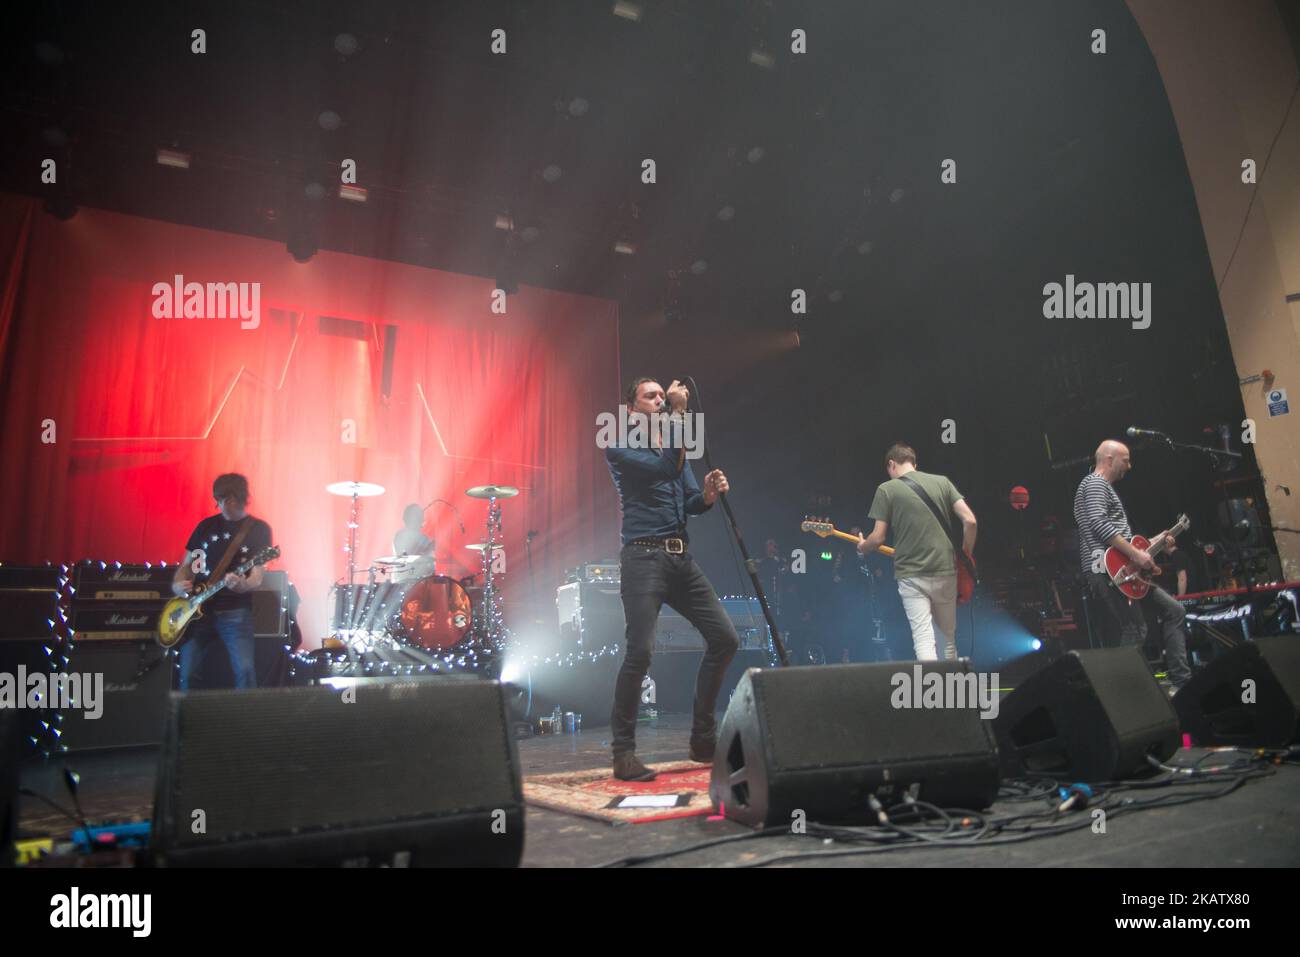 La band indie rock britannica Shed Seven si esibirà sul palco alla O2 Academy Brixton di Londra, Regno Unito, il 16 dicembre 2017. La band ha pubblicato un nuovo album chiamato 'Instant Pleasures'. La formazione attuale è composta da Ricky Witter (voce), Paul Banks (chitarra), Joe Johnson (chitarra), Tom Gladwin (basso) e Alan Leach (batteria). (Foto di Alberto Pezzali/NurPhoto) Foto Stock